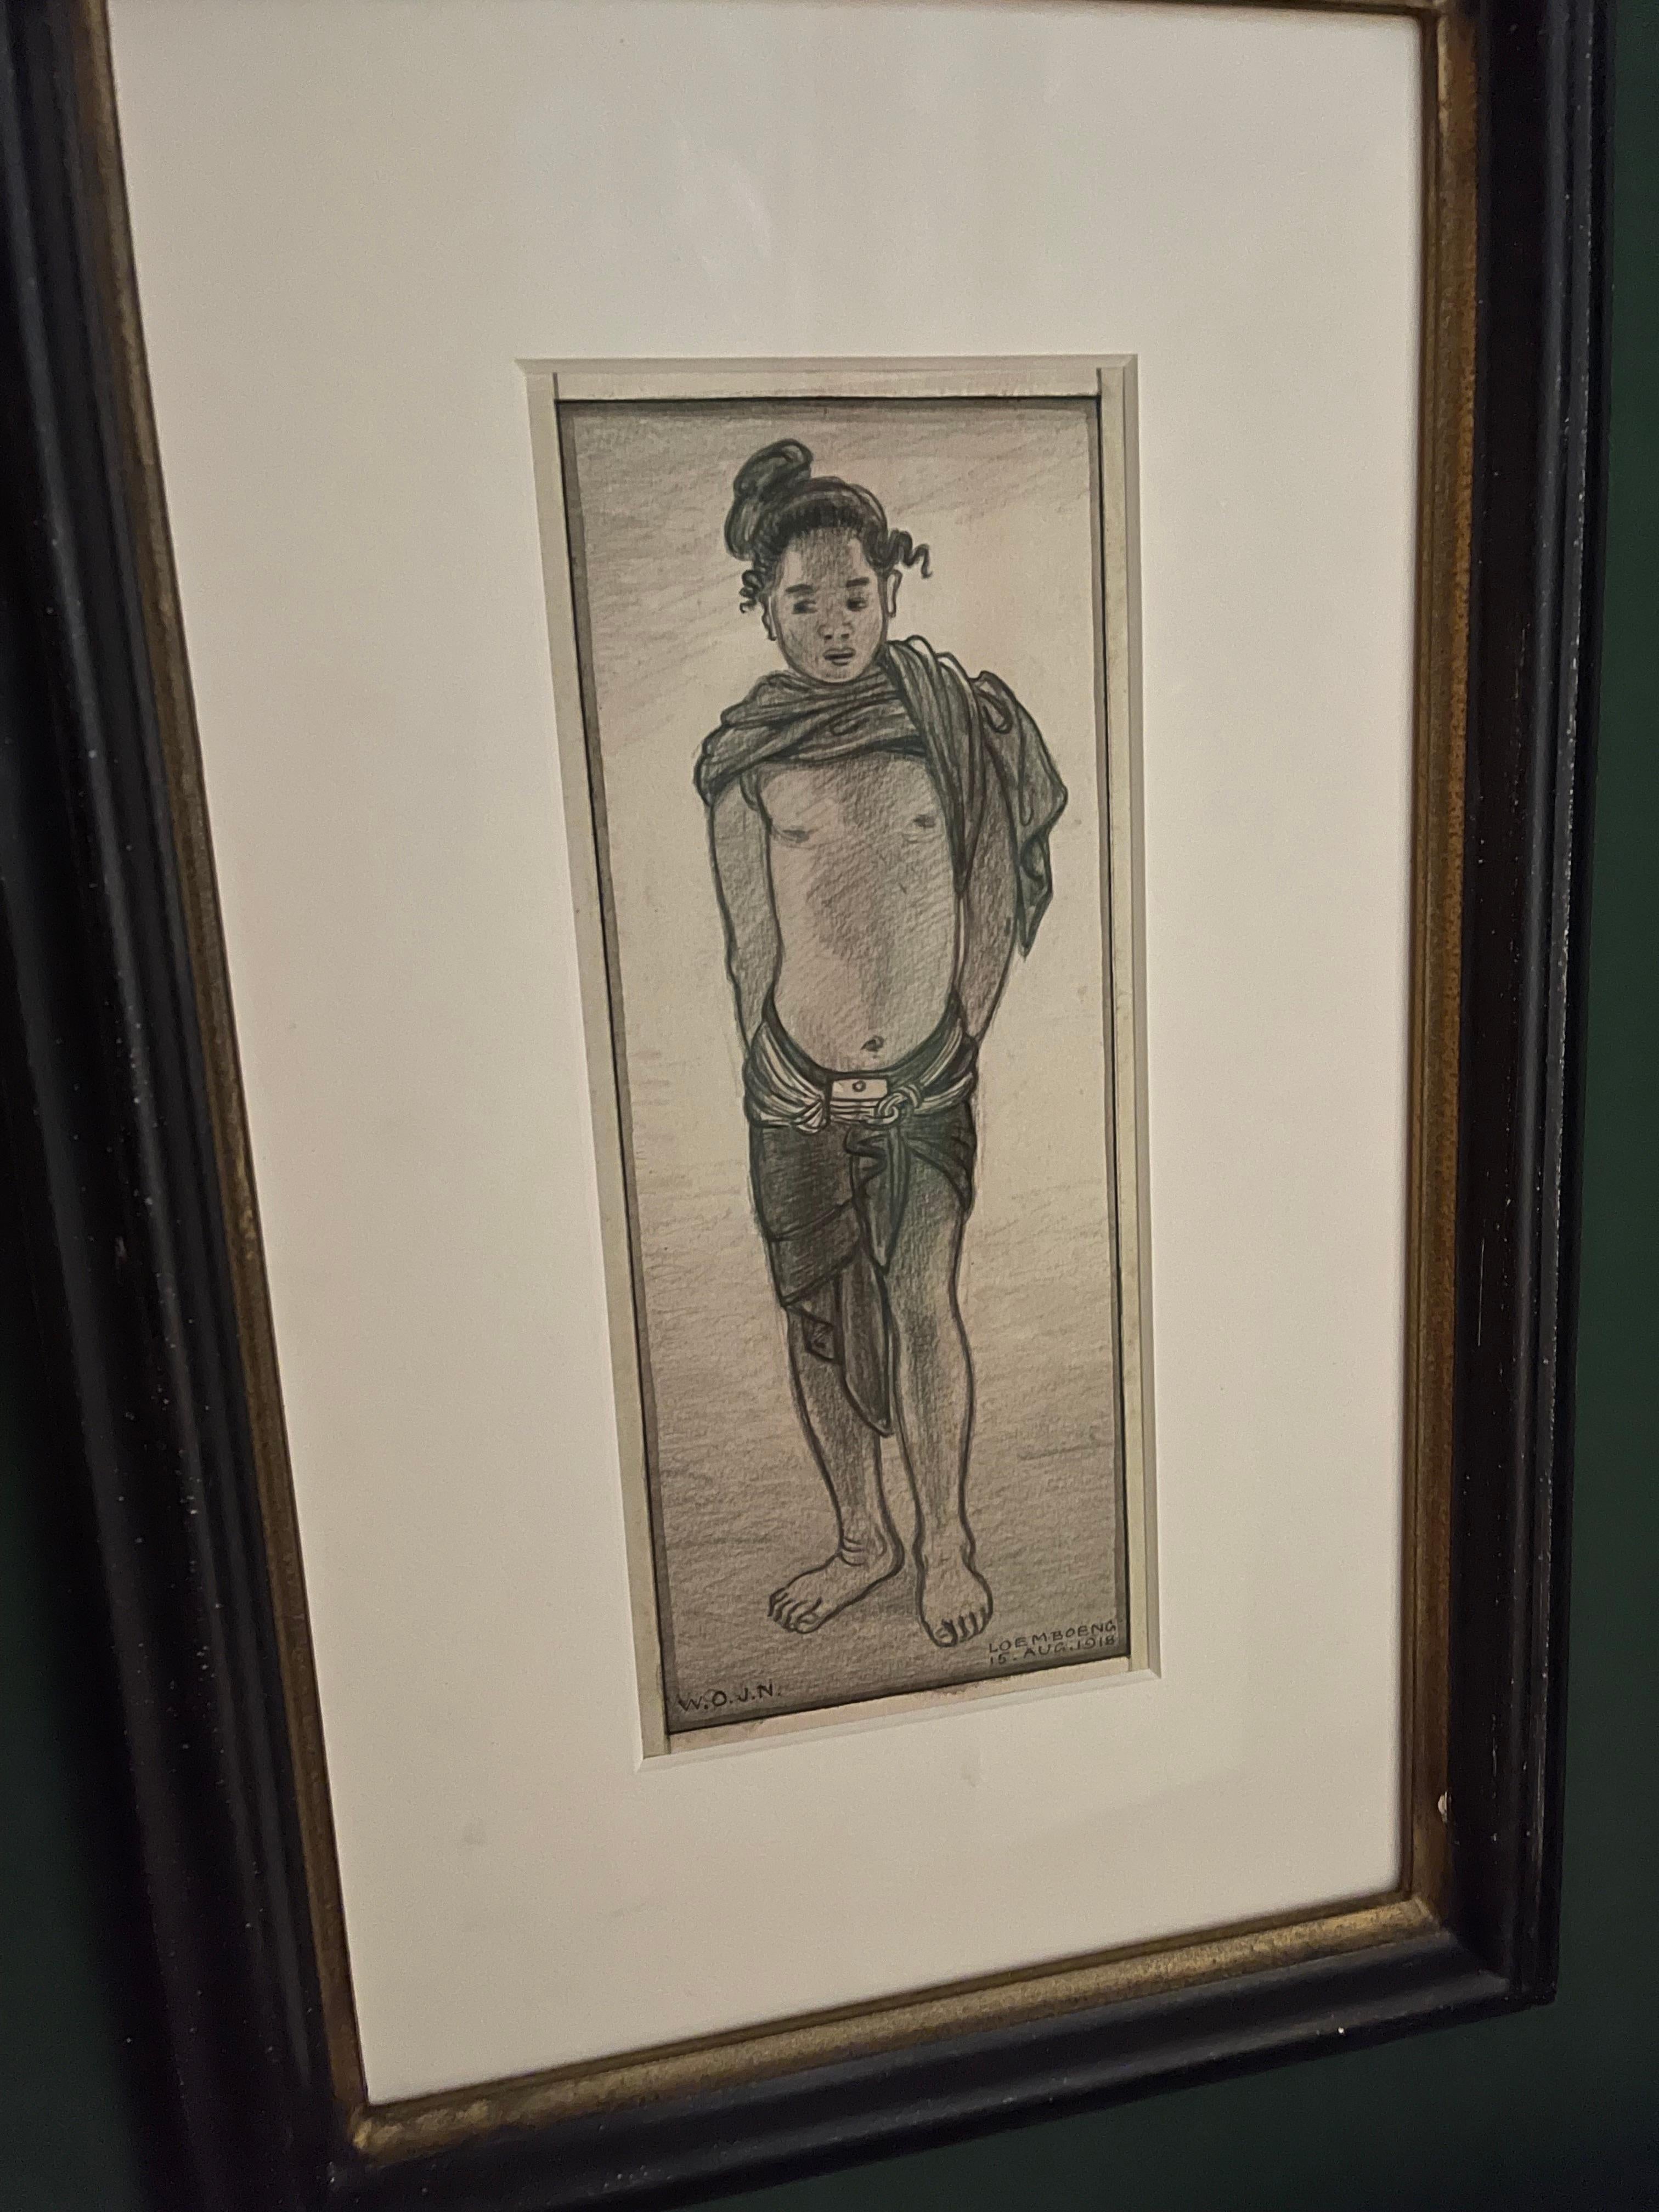 Junger Junge im Loemboeng-Stil, 1918 (Art nouveau), Art, von W.O.J. Nieuwenkamp